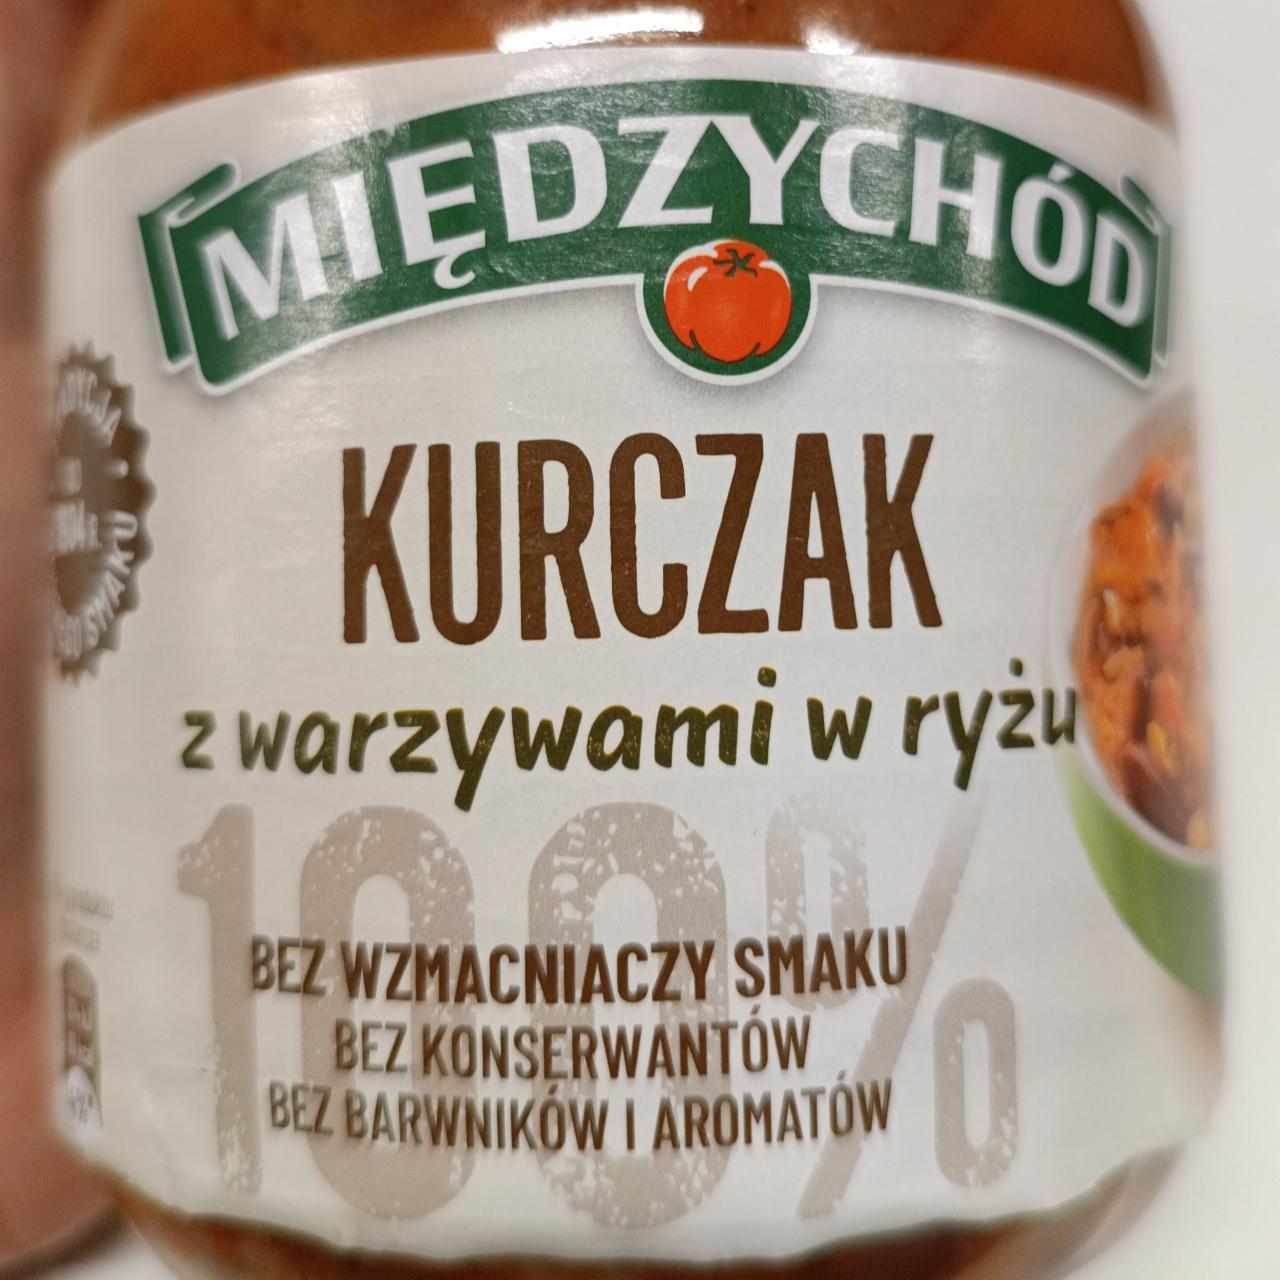 Fotografie - kurczak s warzywami w ryżu Międzychód